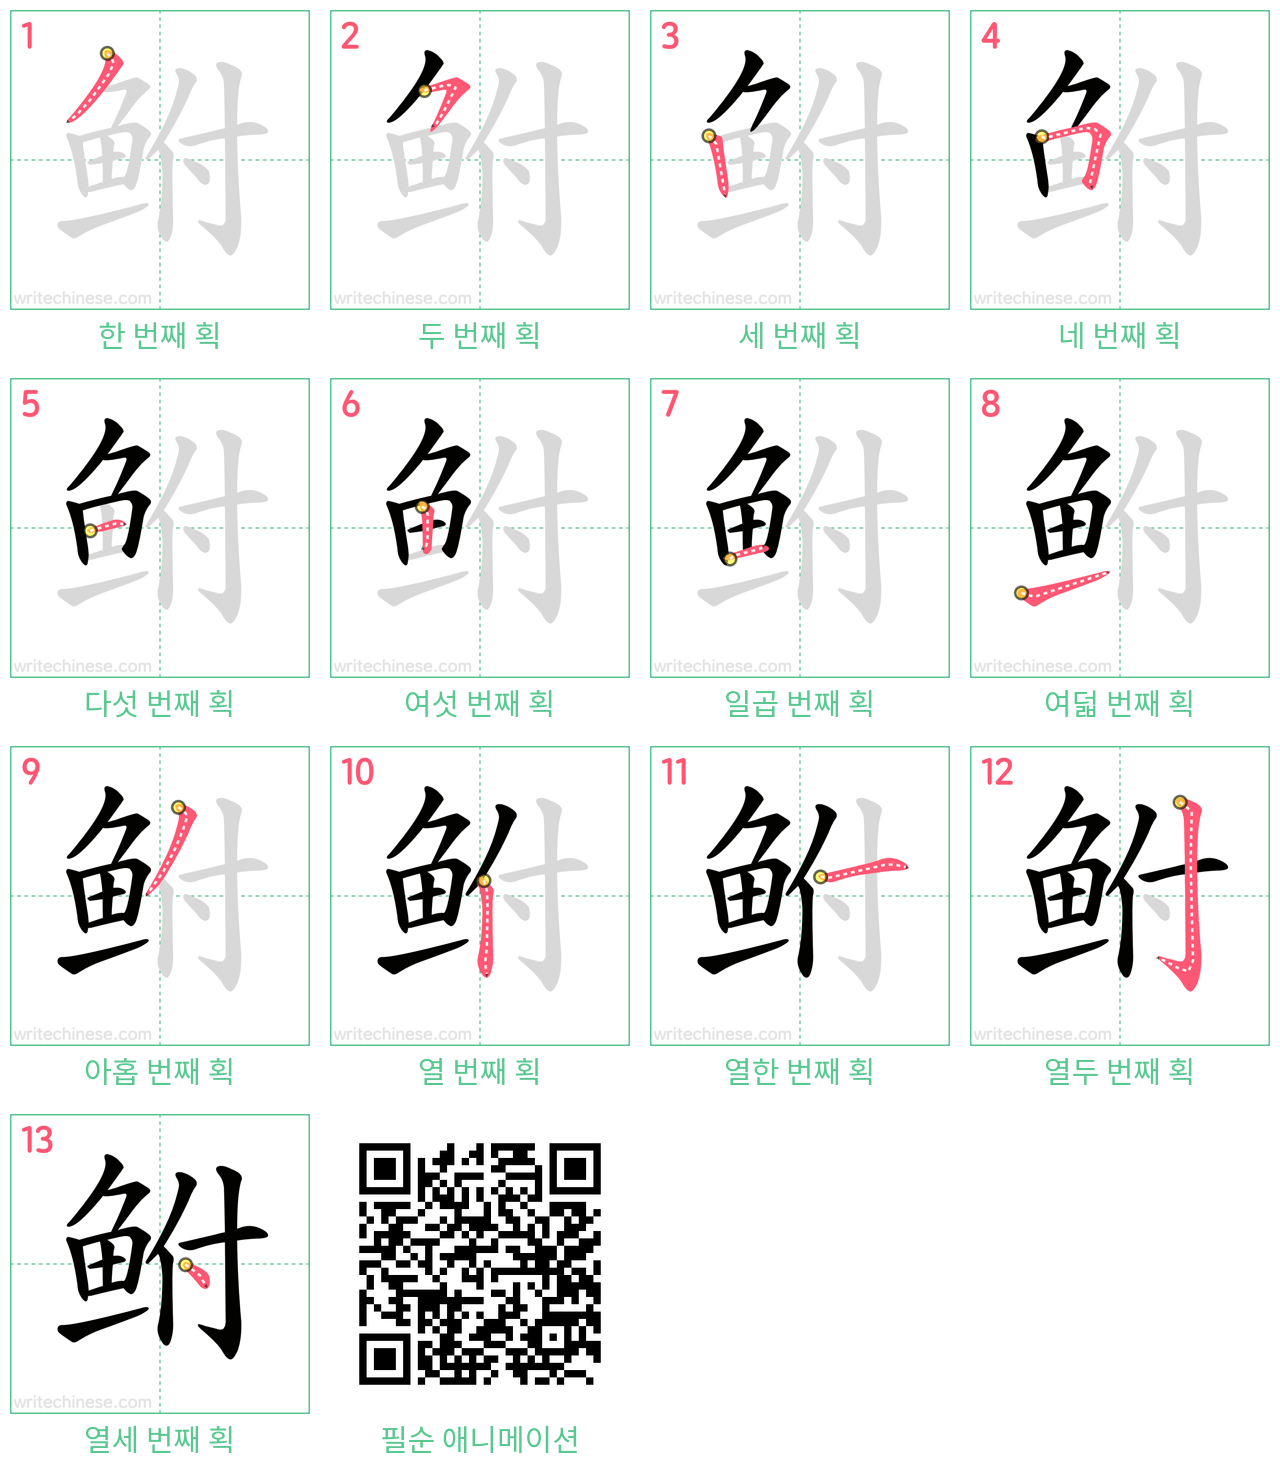 鲋 step-by-step stroke order diagrams